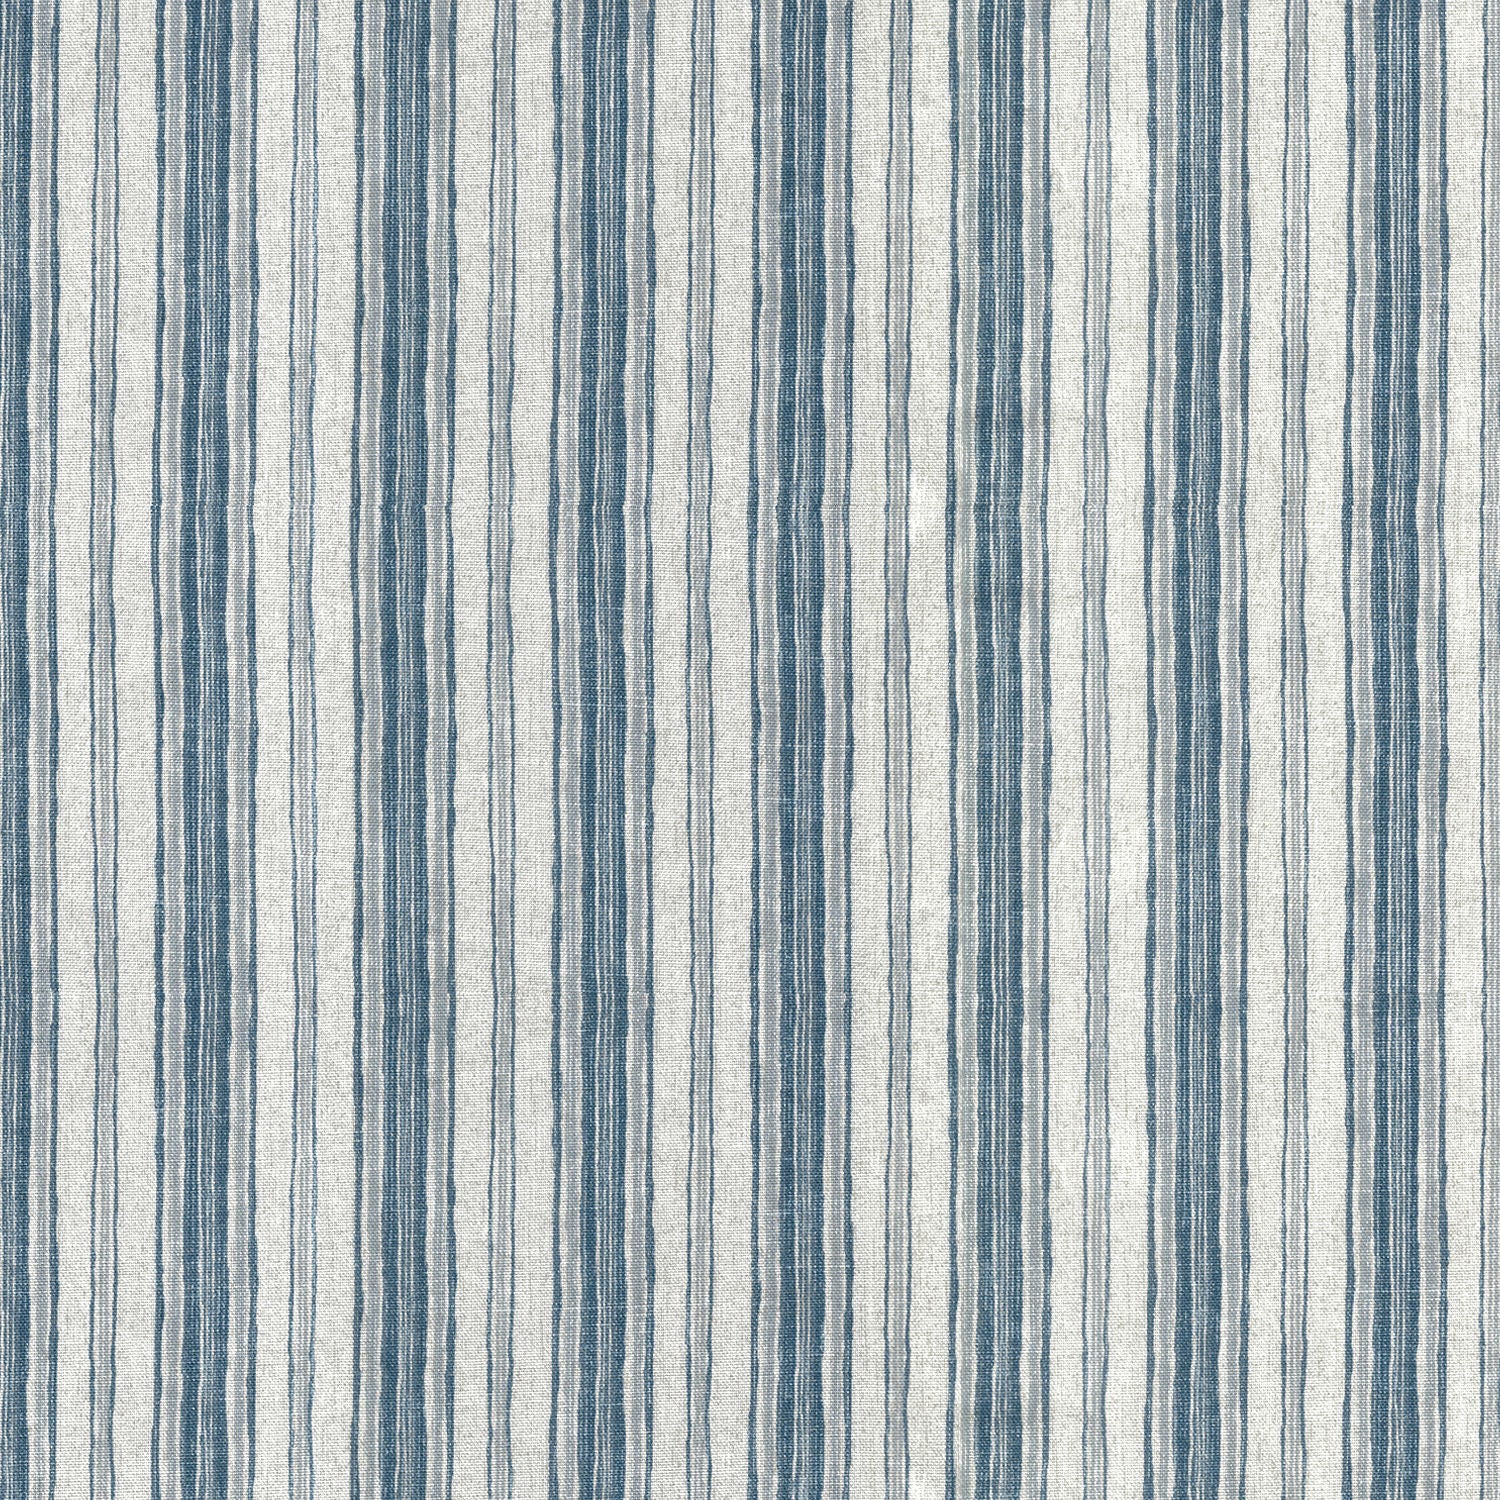 pinch pleated curtains in brunswick denim blue stripe